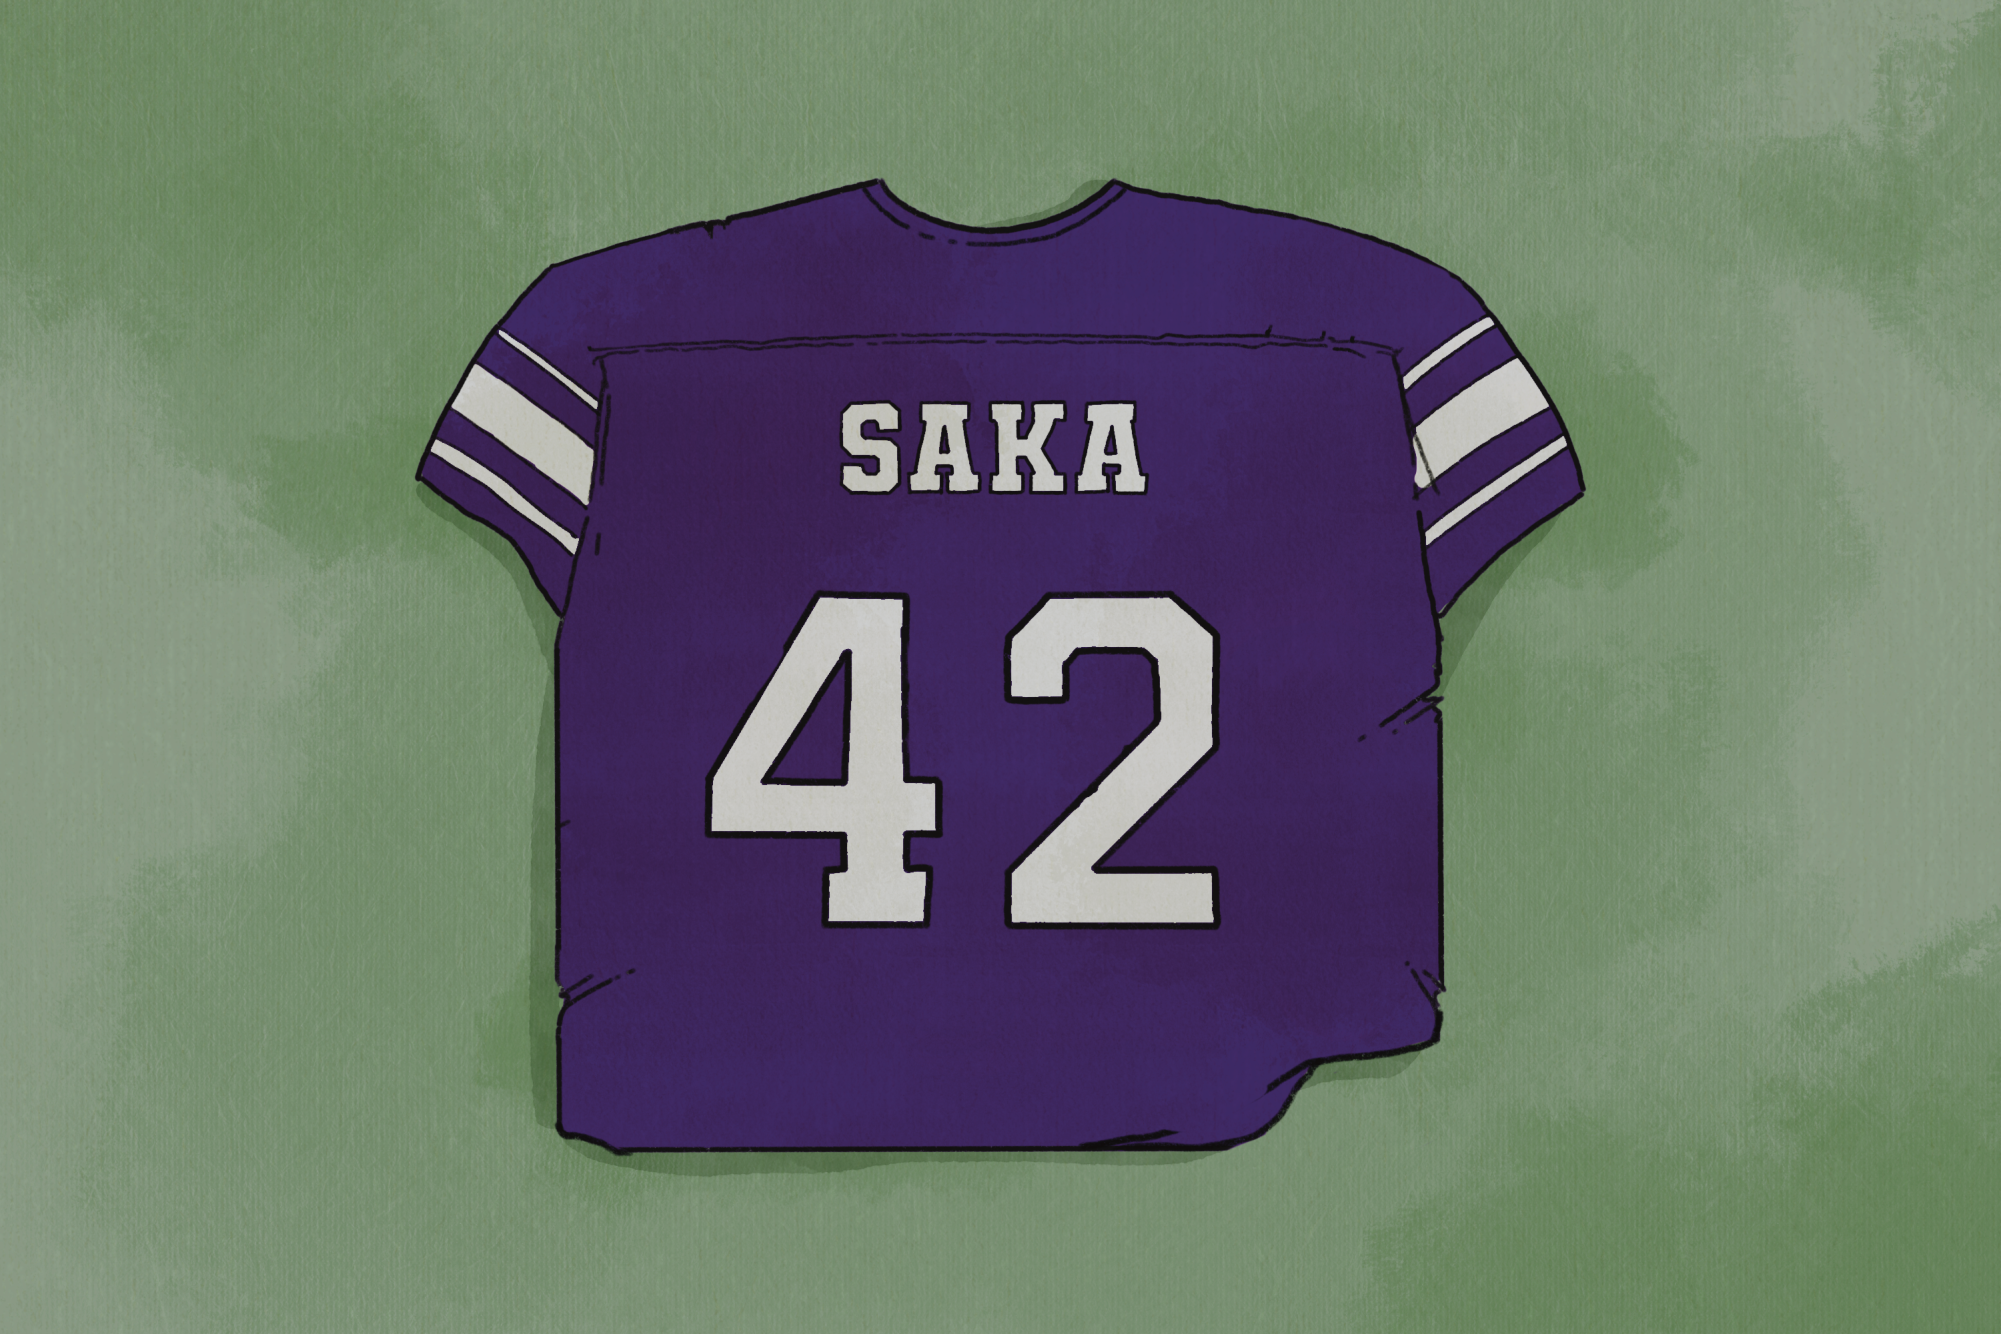 Defensive lineman Anto Saka has two sacks for the Cats this season.